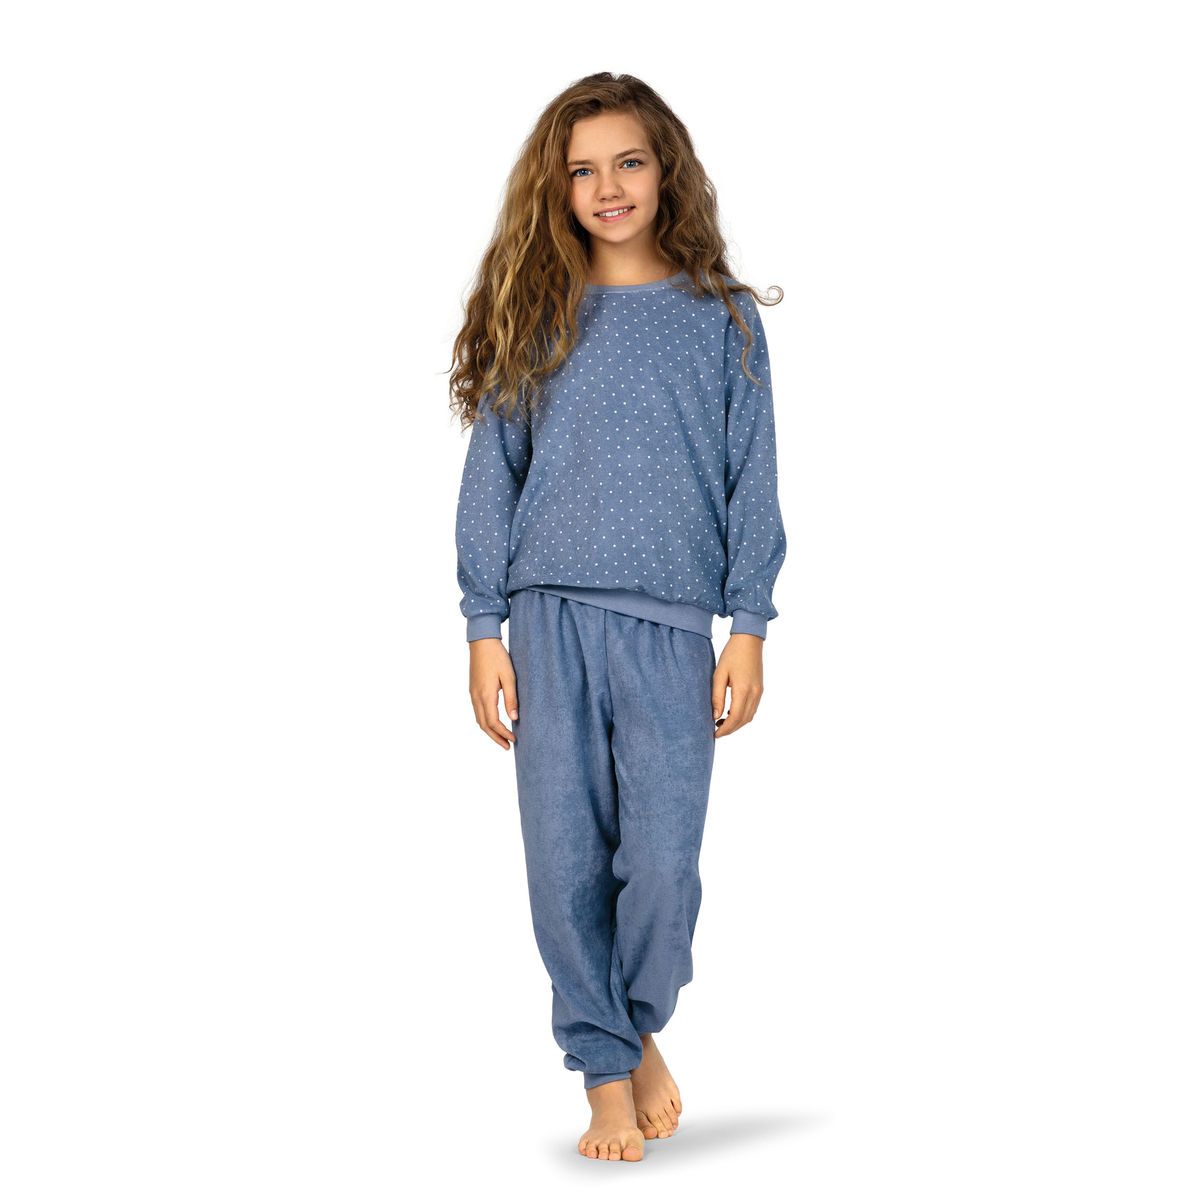 Frustratie directory Medicinaal Meisjes pyjama blauw badstof | Gratis verzending | Online de mooiste  pyjama's, nachthemden, ondermode en meer